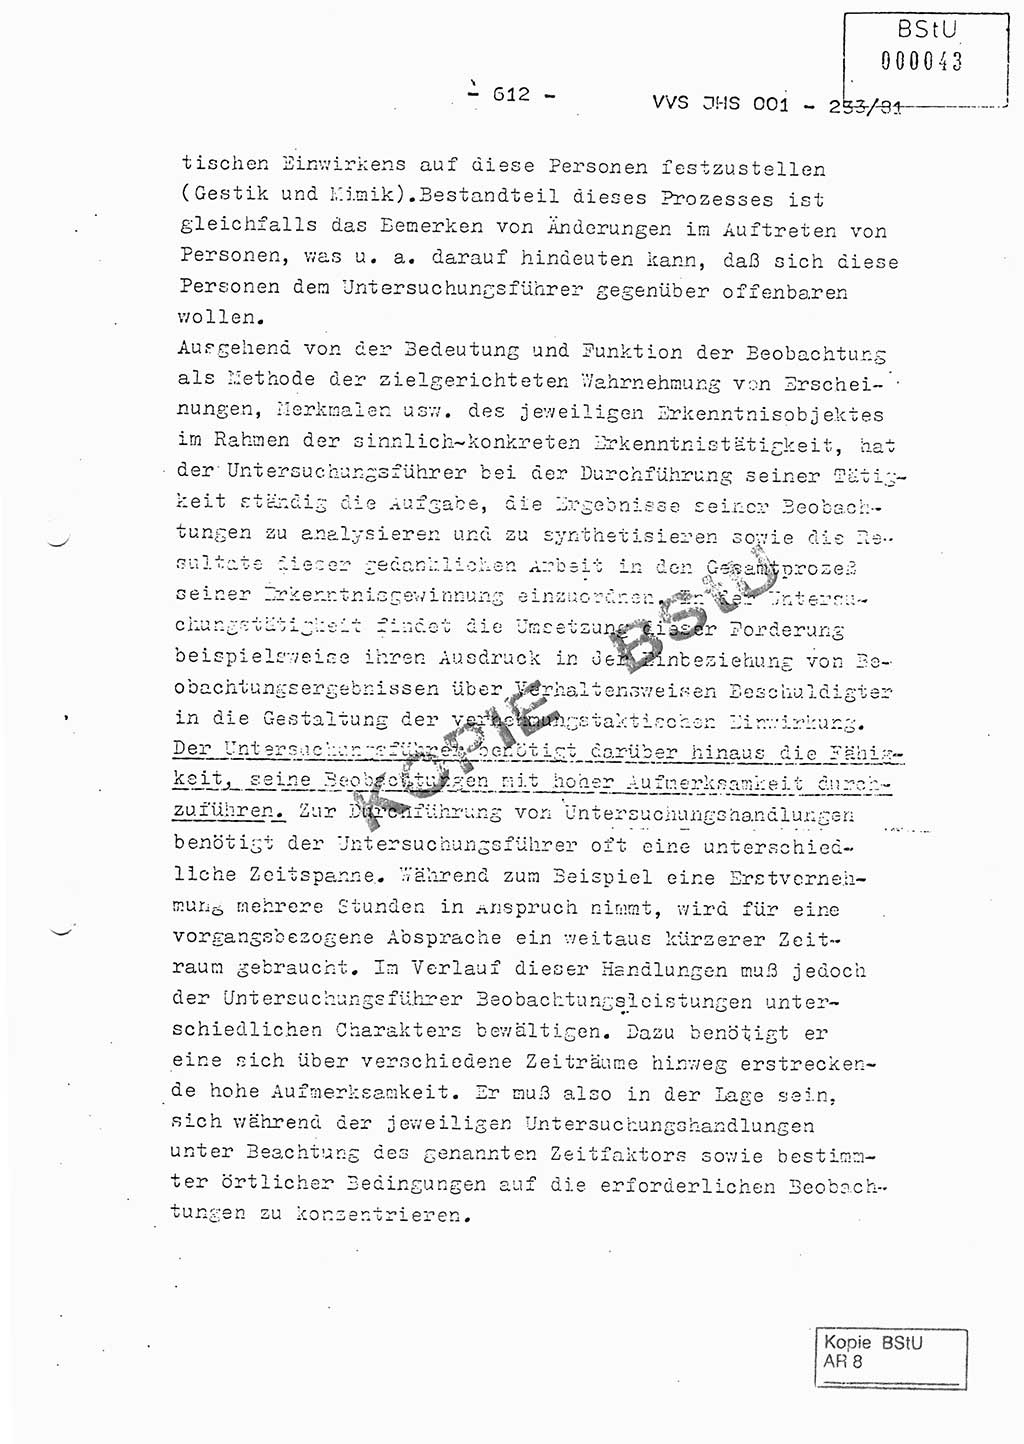 Dissertation Oberstleutnant Horst Zank (JHS), Oberstleutnant Dr. Karl-Heinz Knoblauch (JHS), Oberstleutnant Gustav-Adolf Kowalewski (HA Ⅸ), Oberstleutnant Wolfgang Plötner (HA Ⅸ), Ministerium für Staatssicherheit (MfS) [Deutsche Demokratische Republik (DDR)], Juristische Hochschule (JHS), Vertrauliche Verschlußsache (VVS) o001-233/81, Potsdam 1981, Blatt 612 (Diss. MfS DDR JHS VVS o001-233/81 1981, Bl. 612)